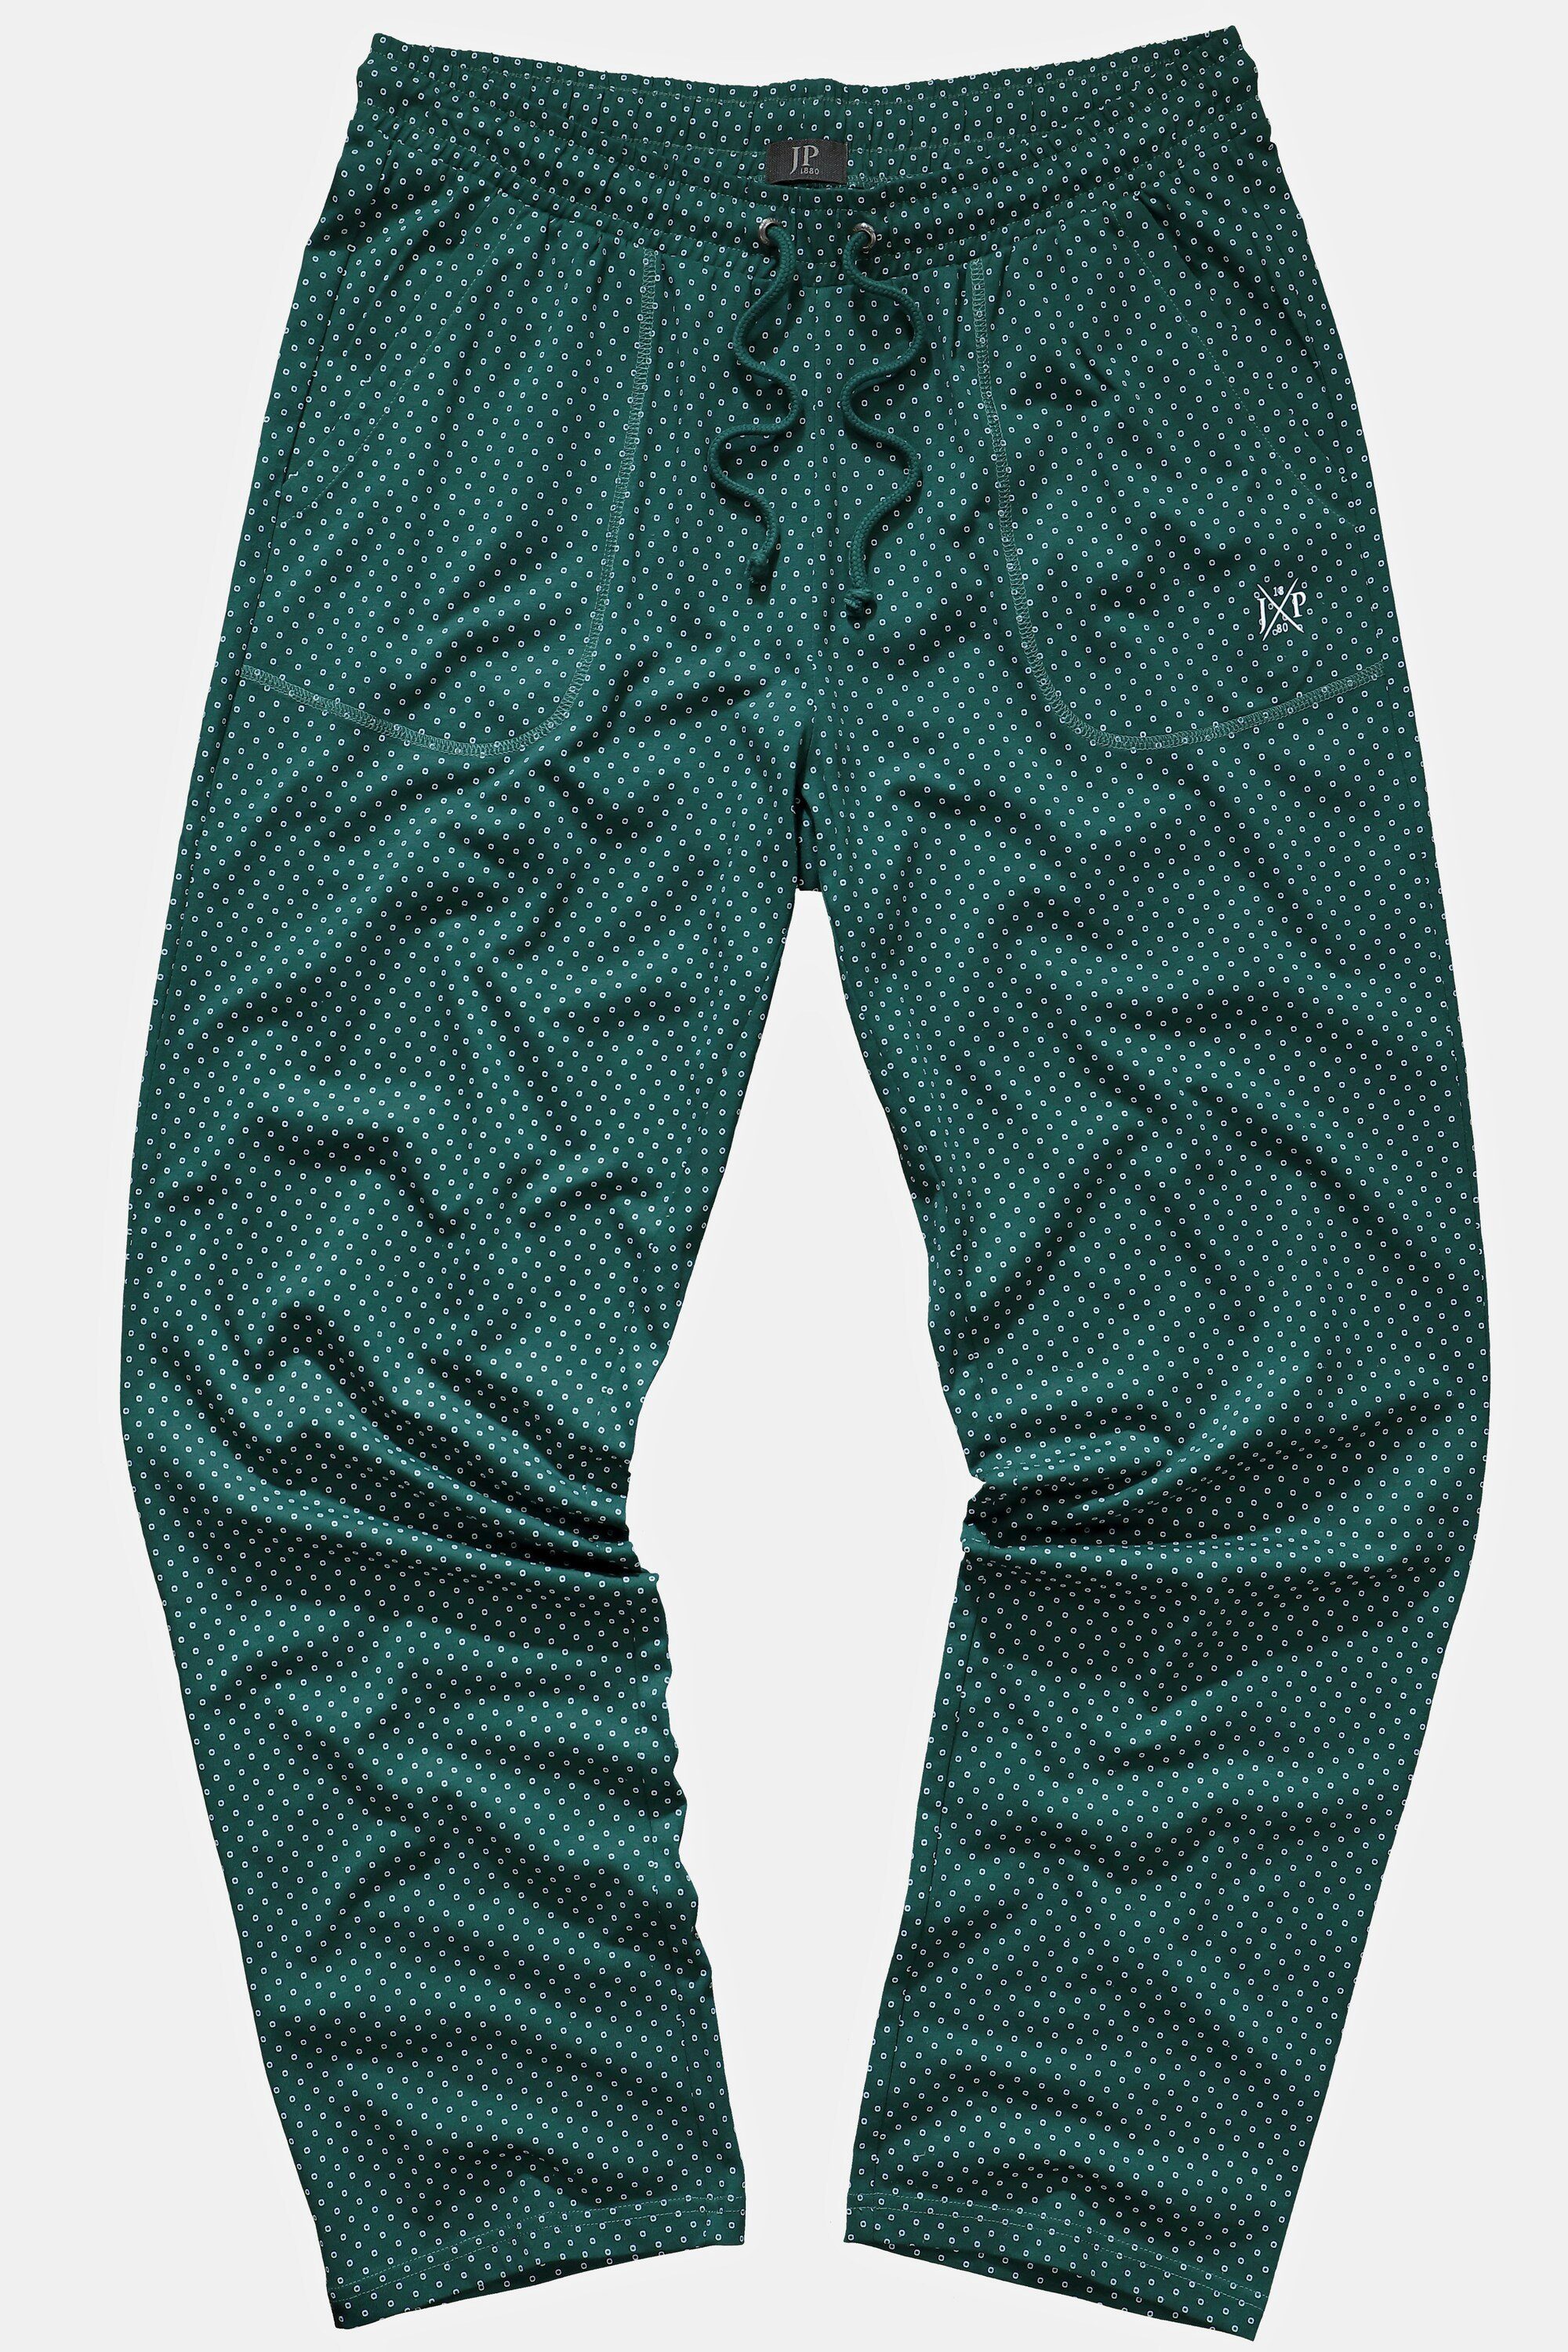 JP1880 Schlafanzug Schlafanzug-Hose Minimal Muster Elastikbund